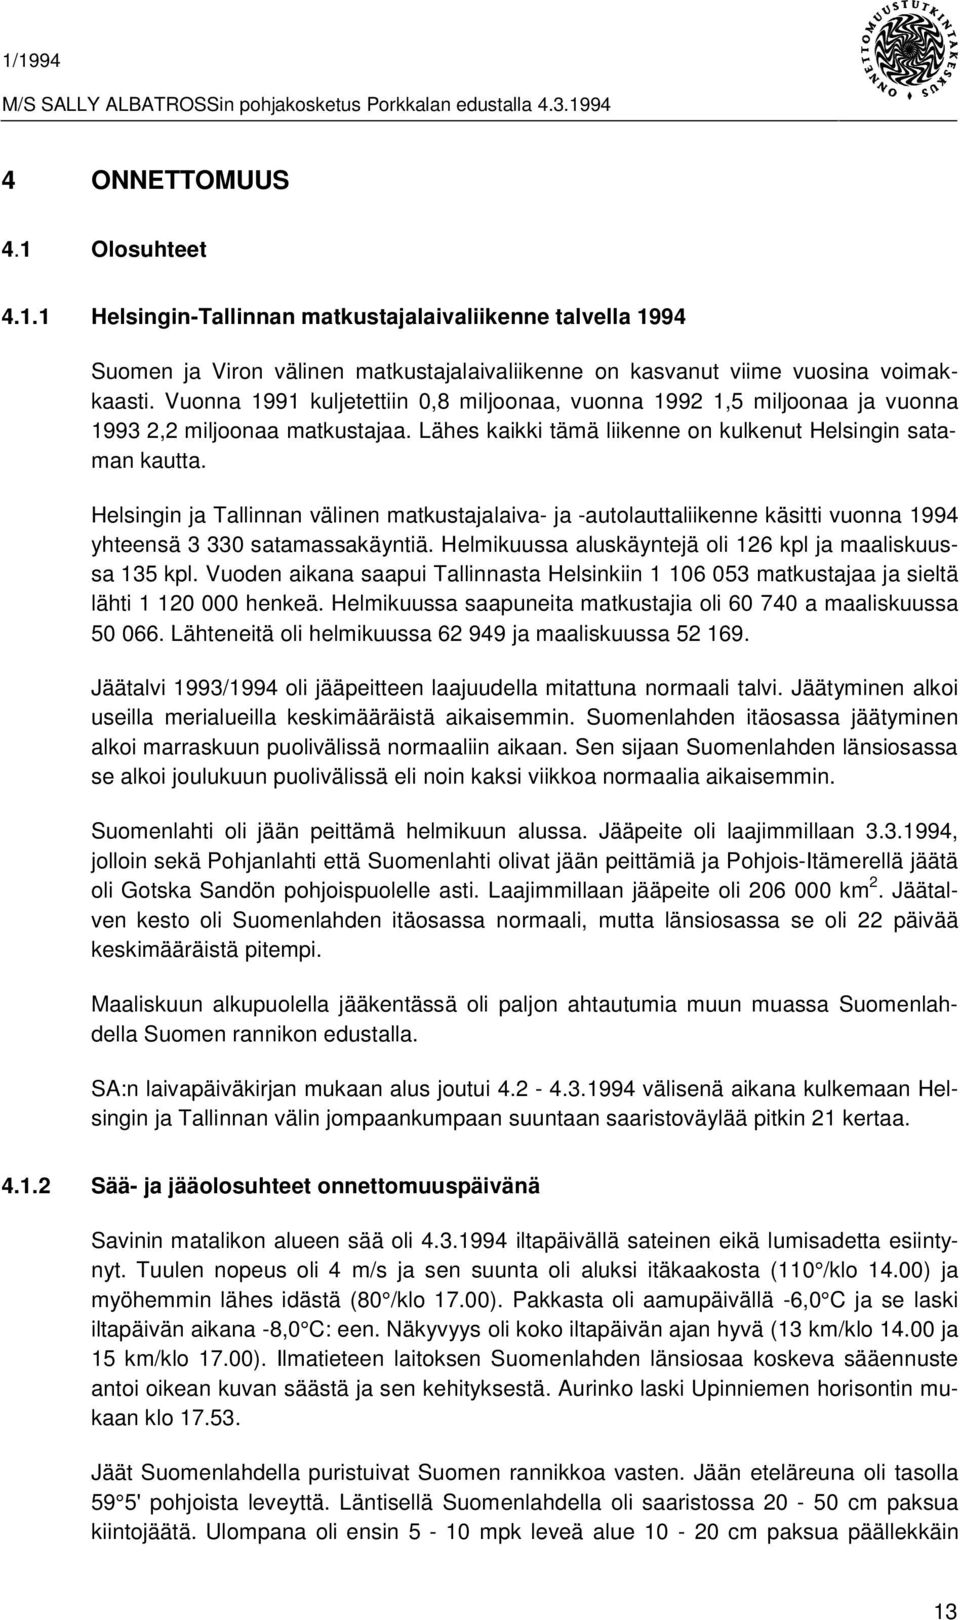 Helsingin ja Tallinnan välinen matkustajalaiva- ja -autolauttaliikenne käsitti vuonna 1994 yhteensä 3 330 satamassakäyntiä. Helmikuussa aluskäyntejä oli 126 kpl ja maaliskuussa 135 kpl.